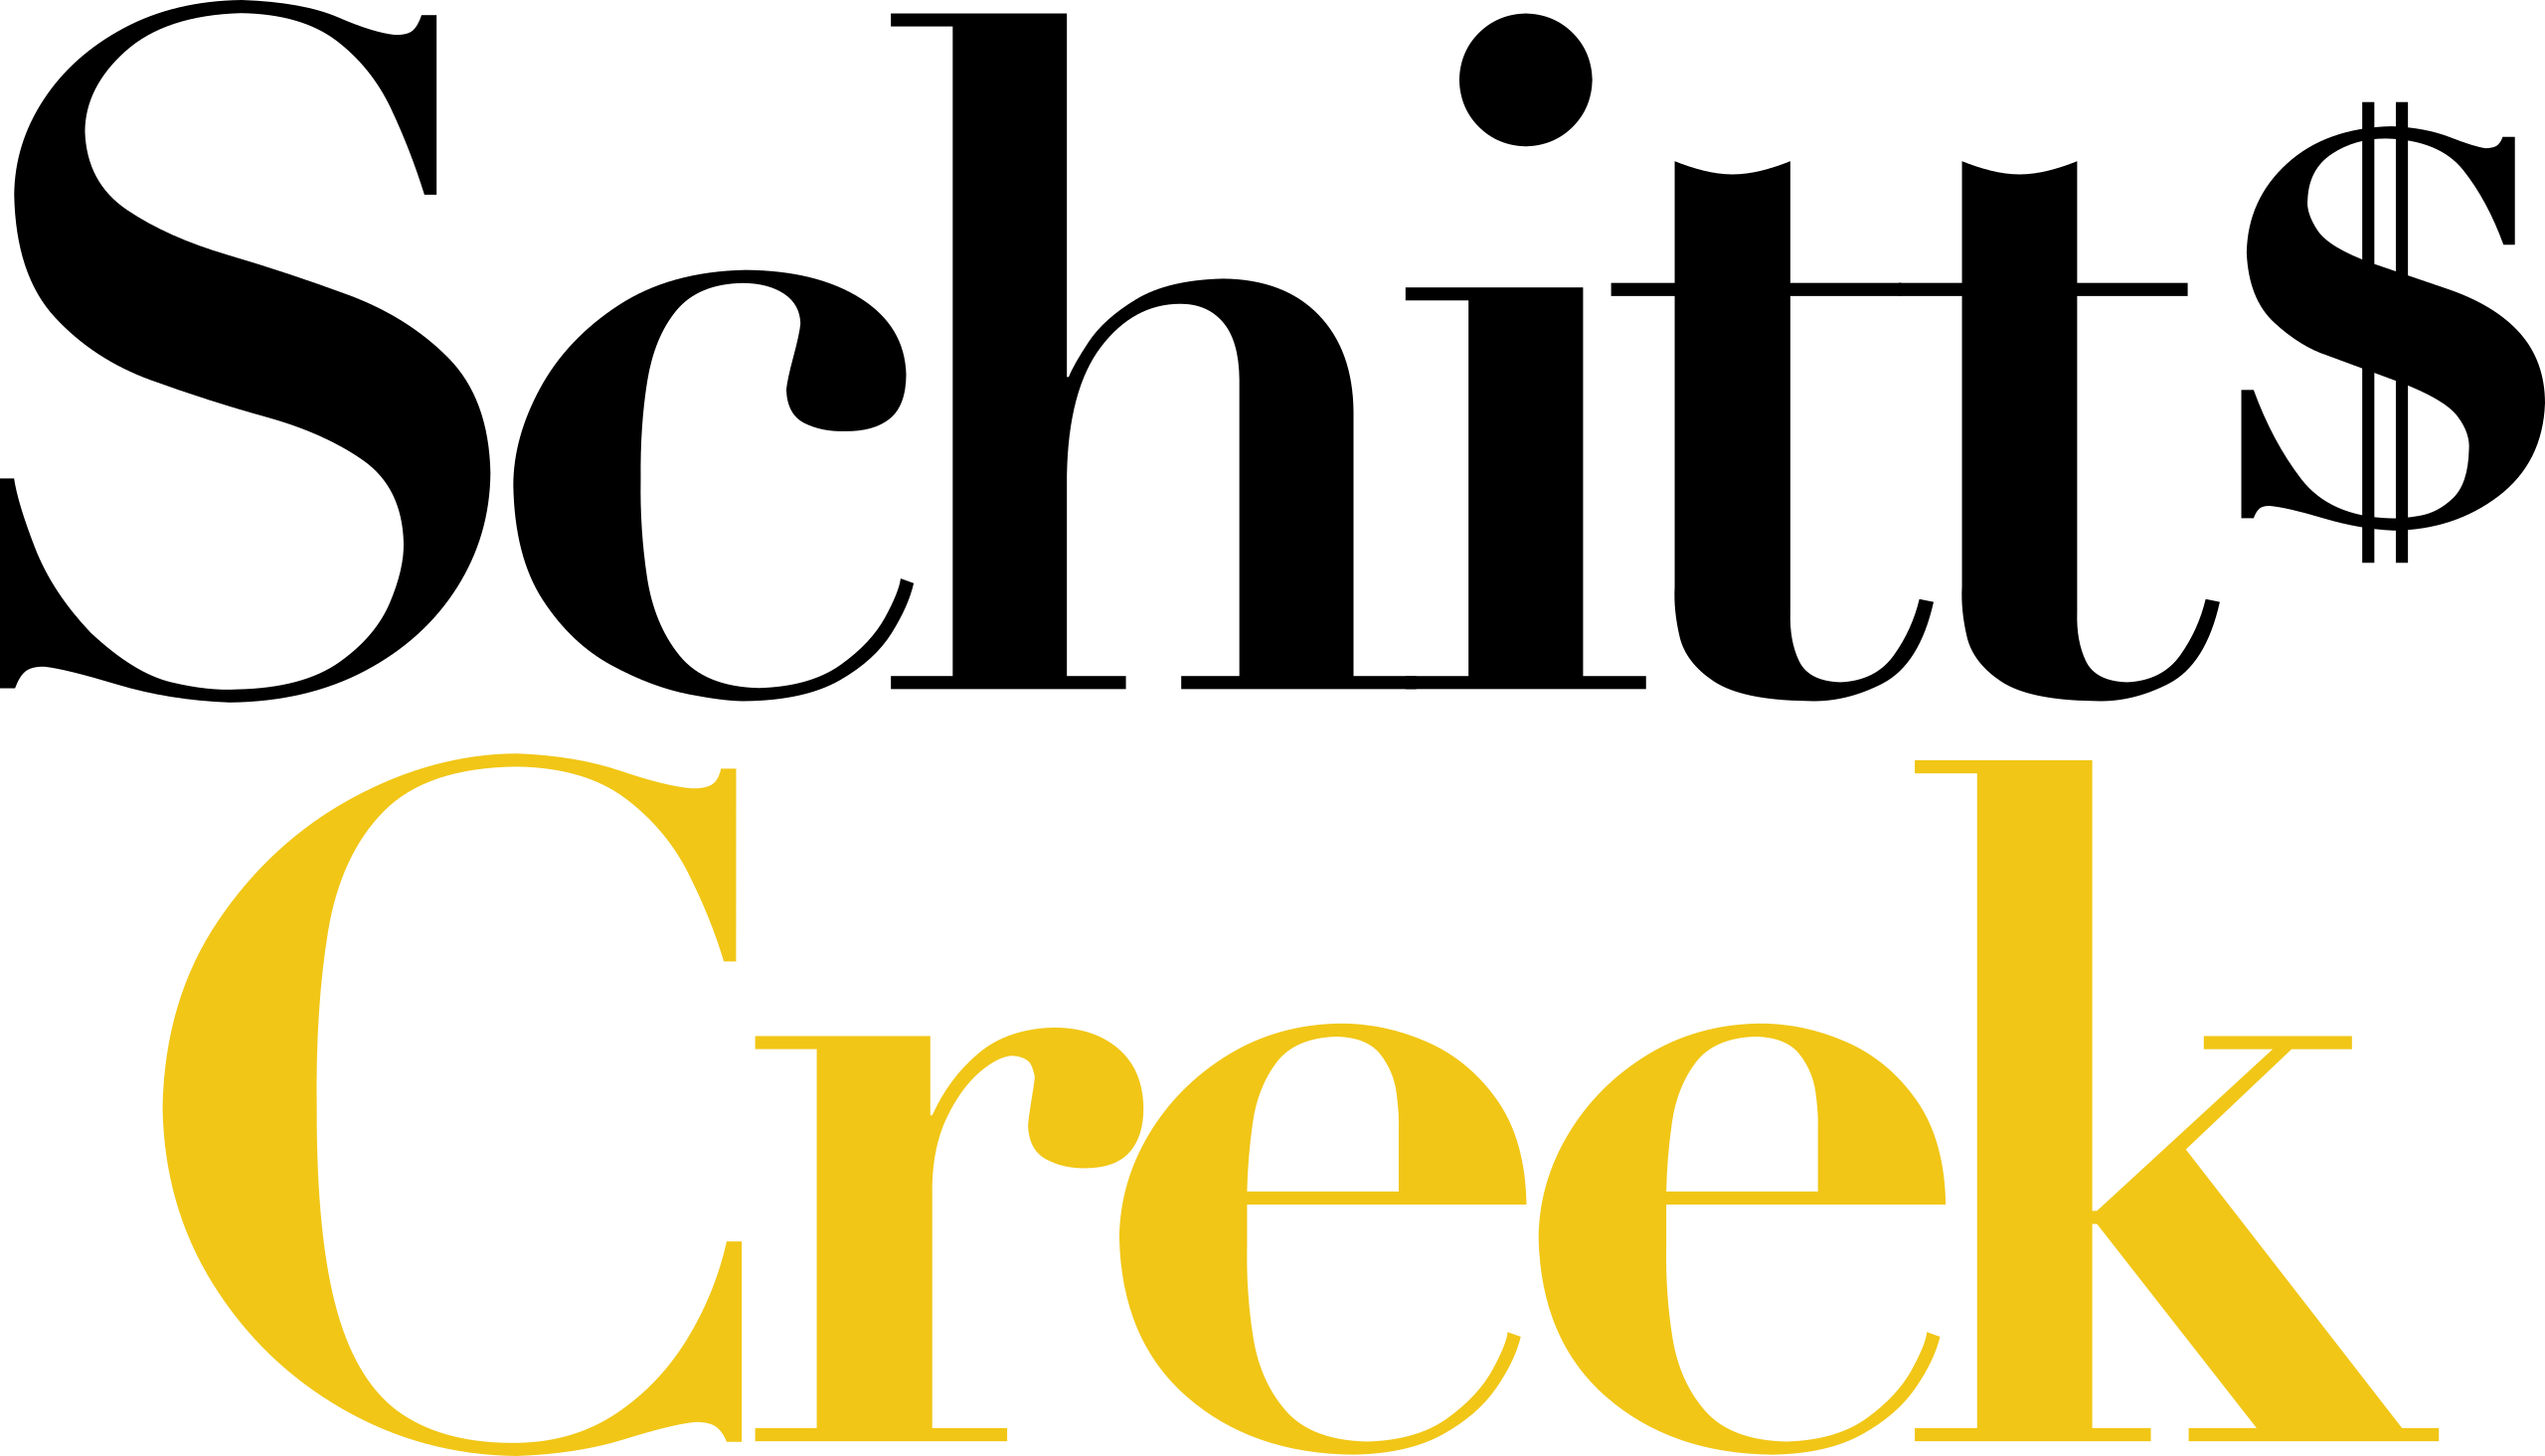 2560px-Schitt%27s_Creek_logo.svg.png